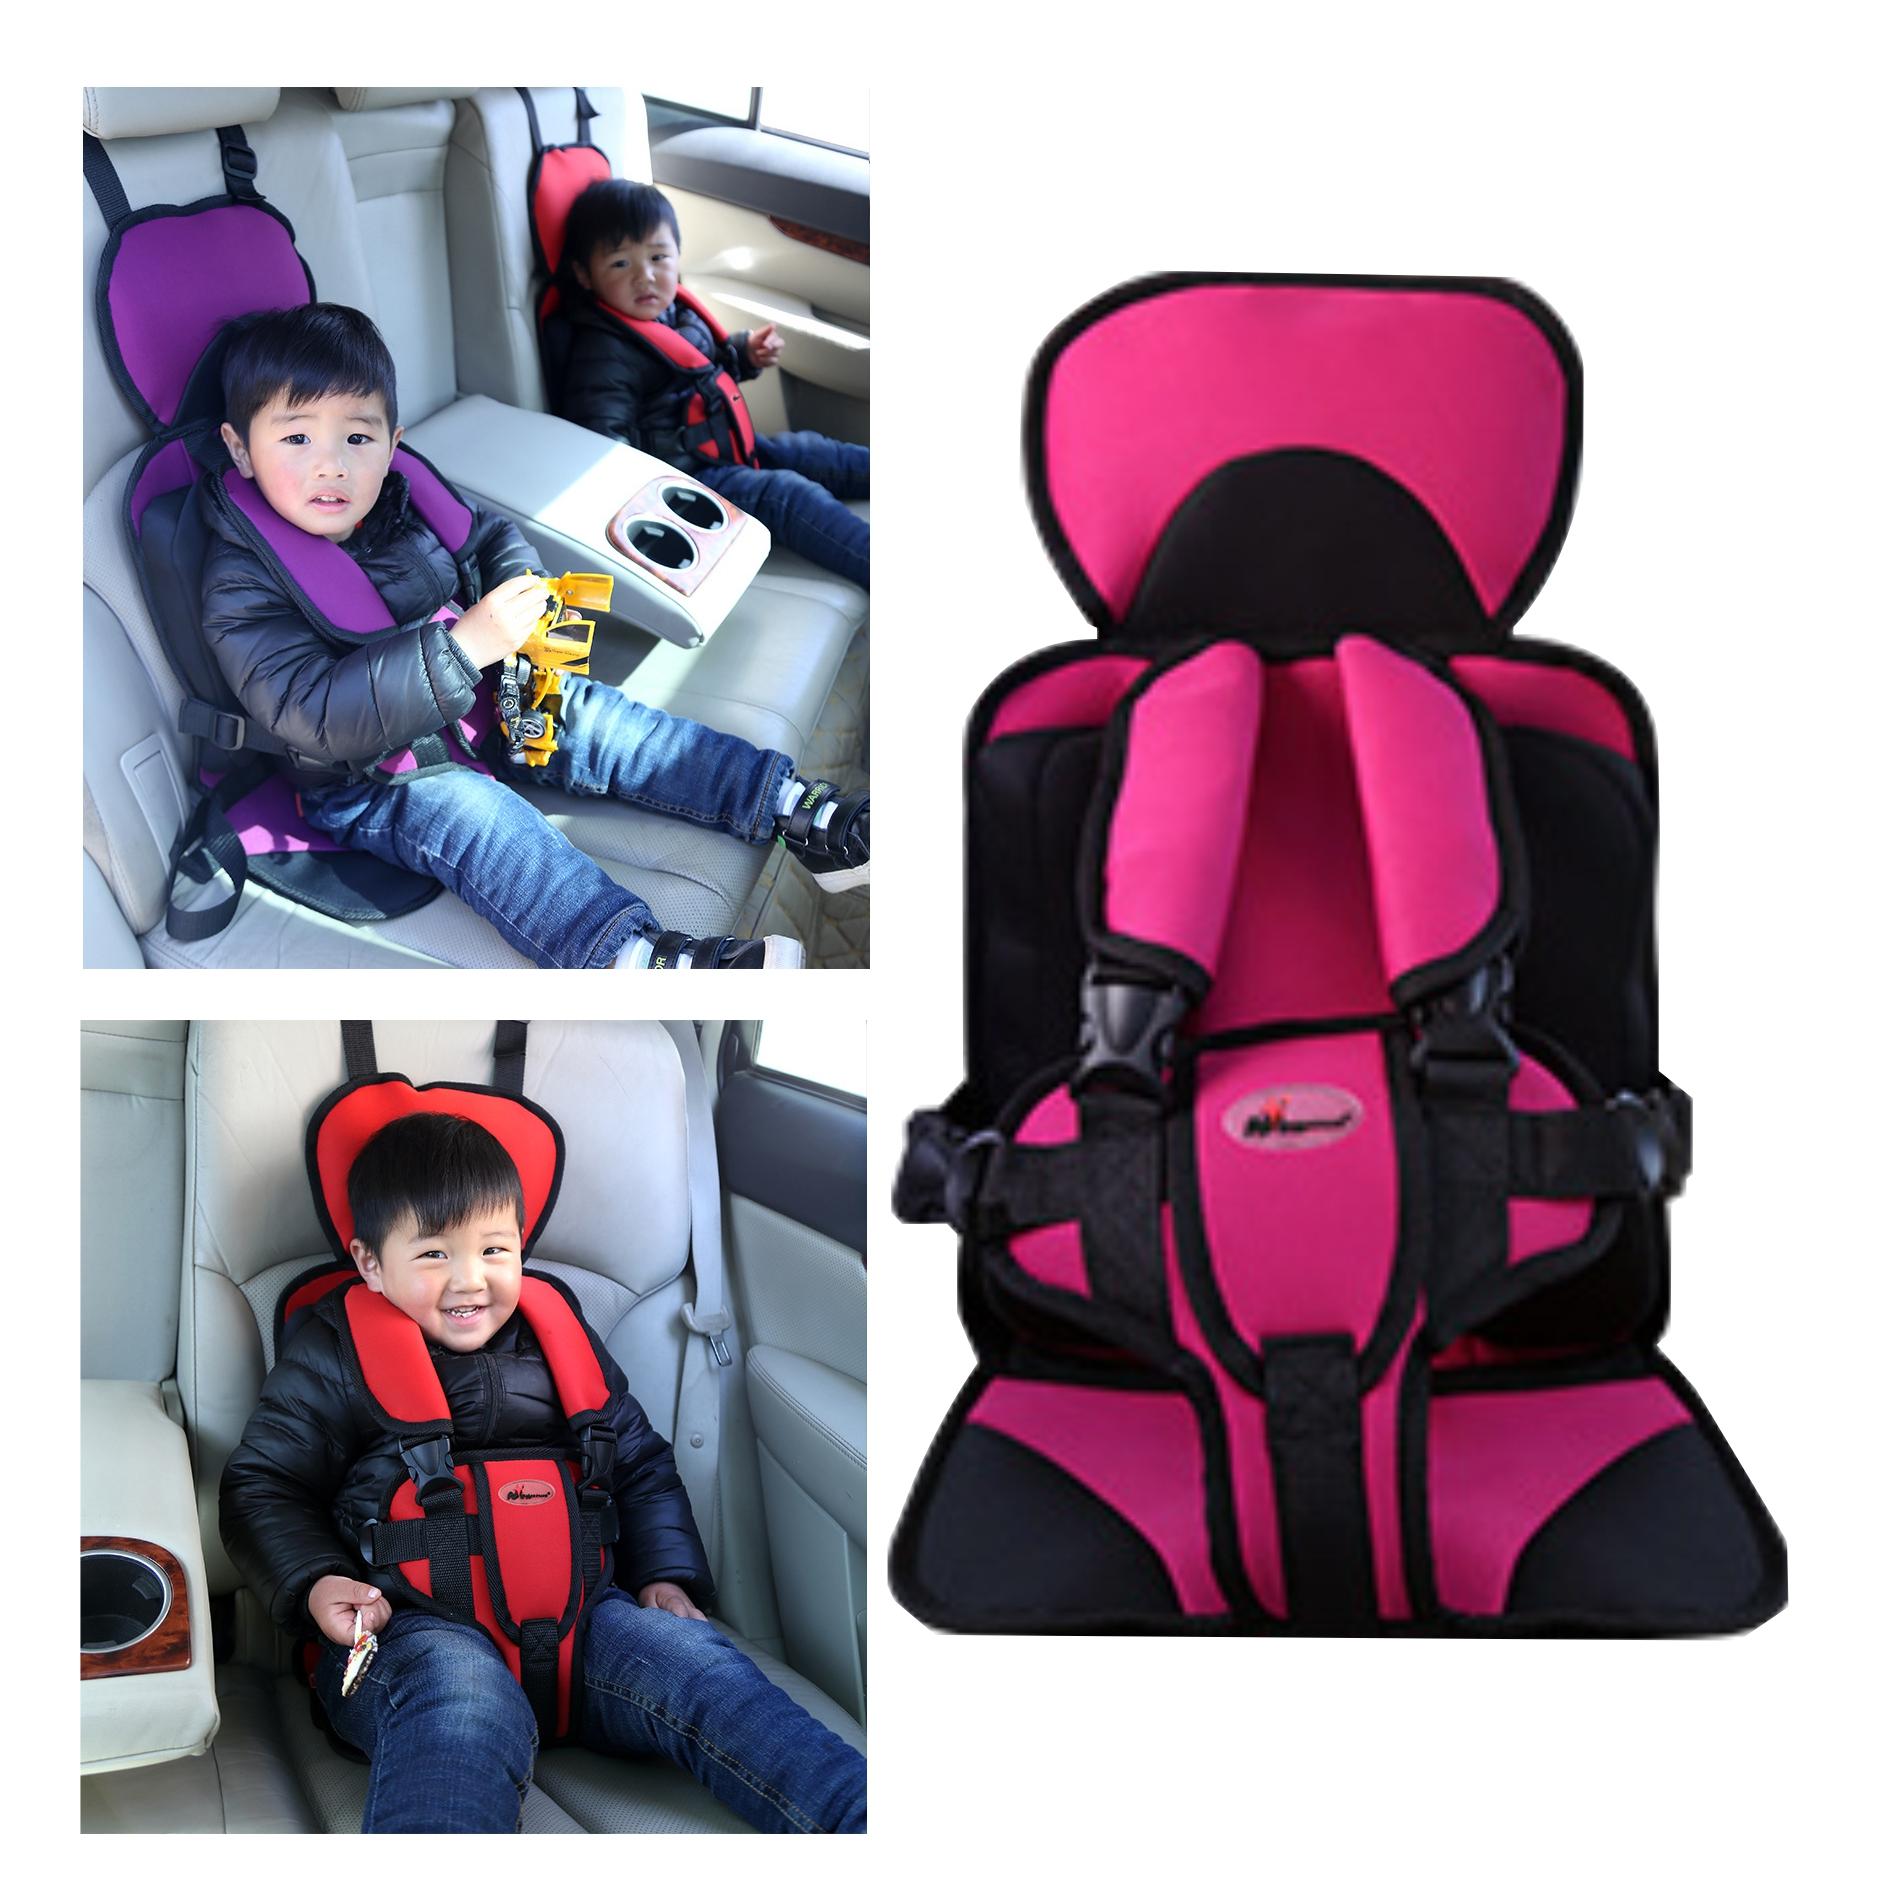 Baby Car Seat ที่นั่งสำหรับเด็กในรถยนต์ เบาะนั่งนิรภัยในรถยนต์ รุ่น NS-119